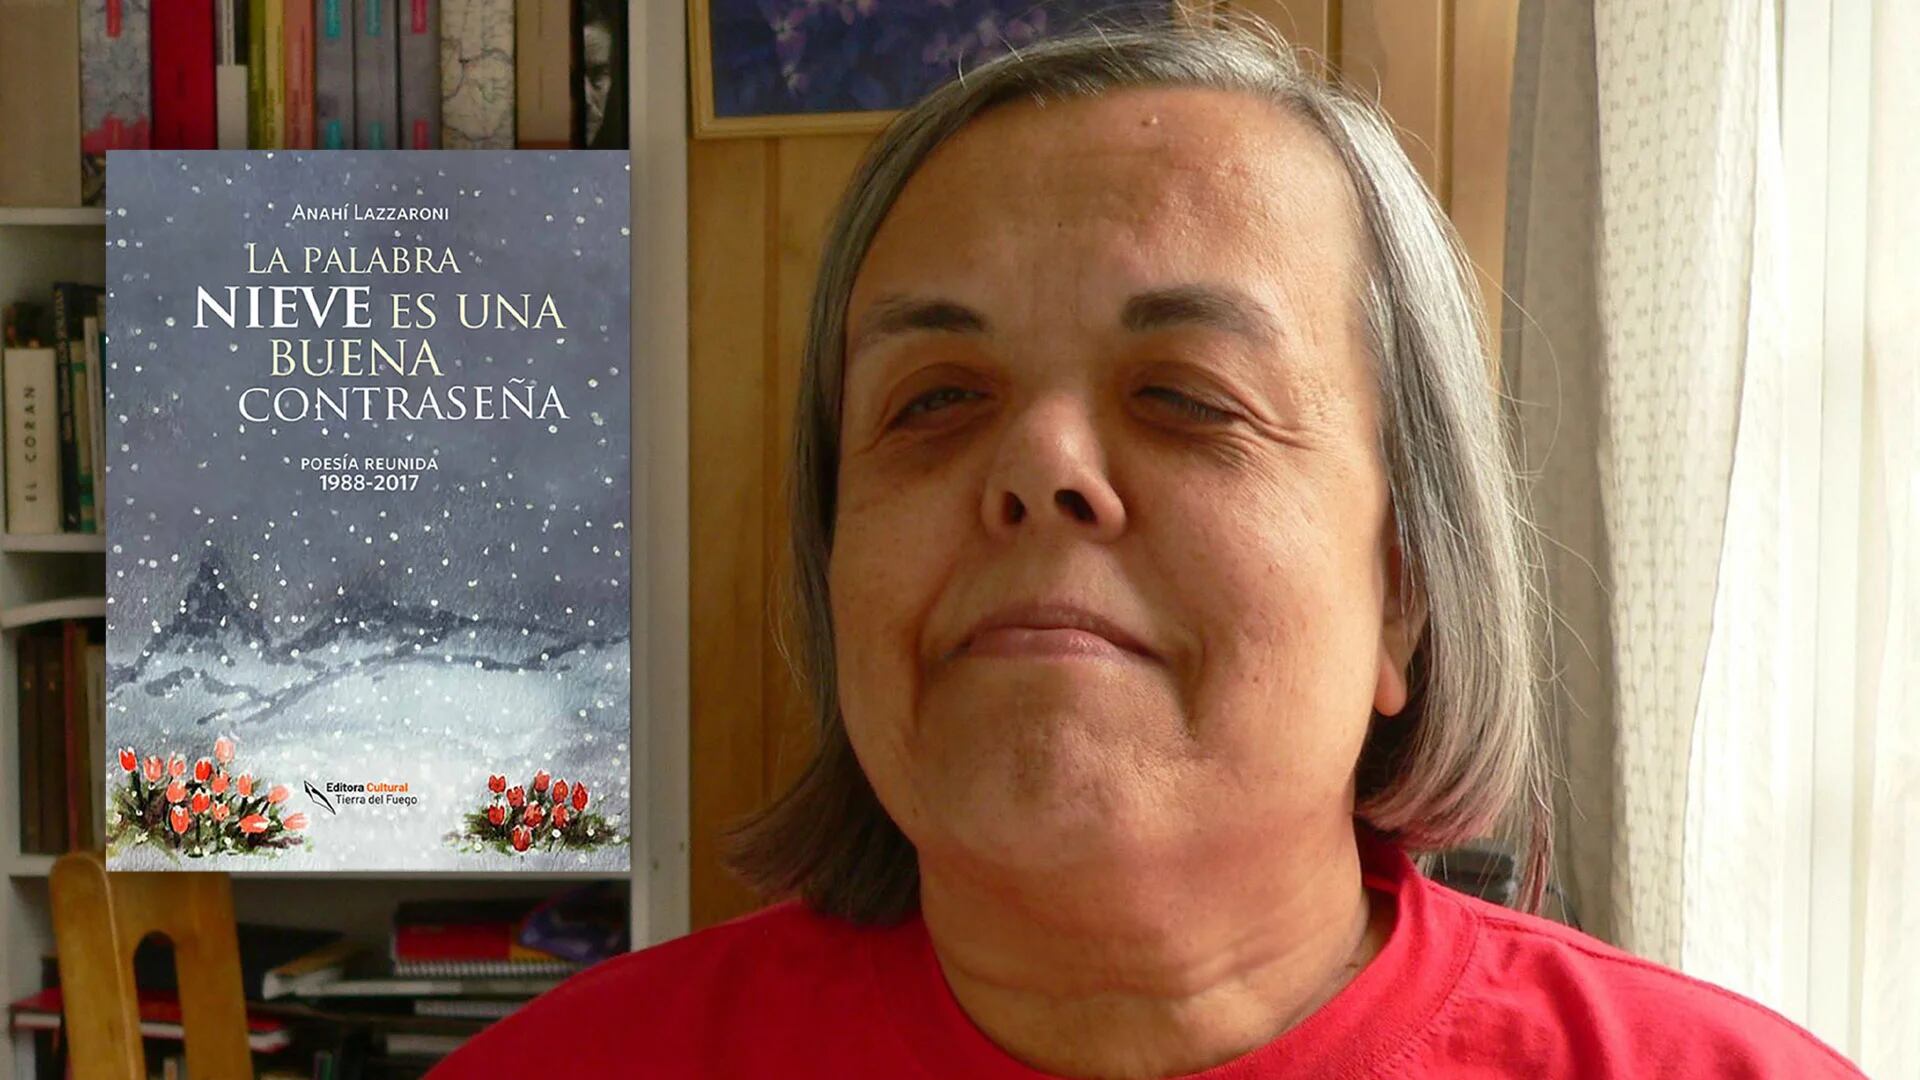 Nieve, viento y encierro forzado: viaje a los versos de Anahí Lazzaroni, la precursora de la poesía del extremo sur argentino